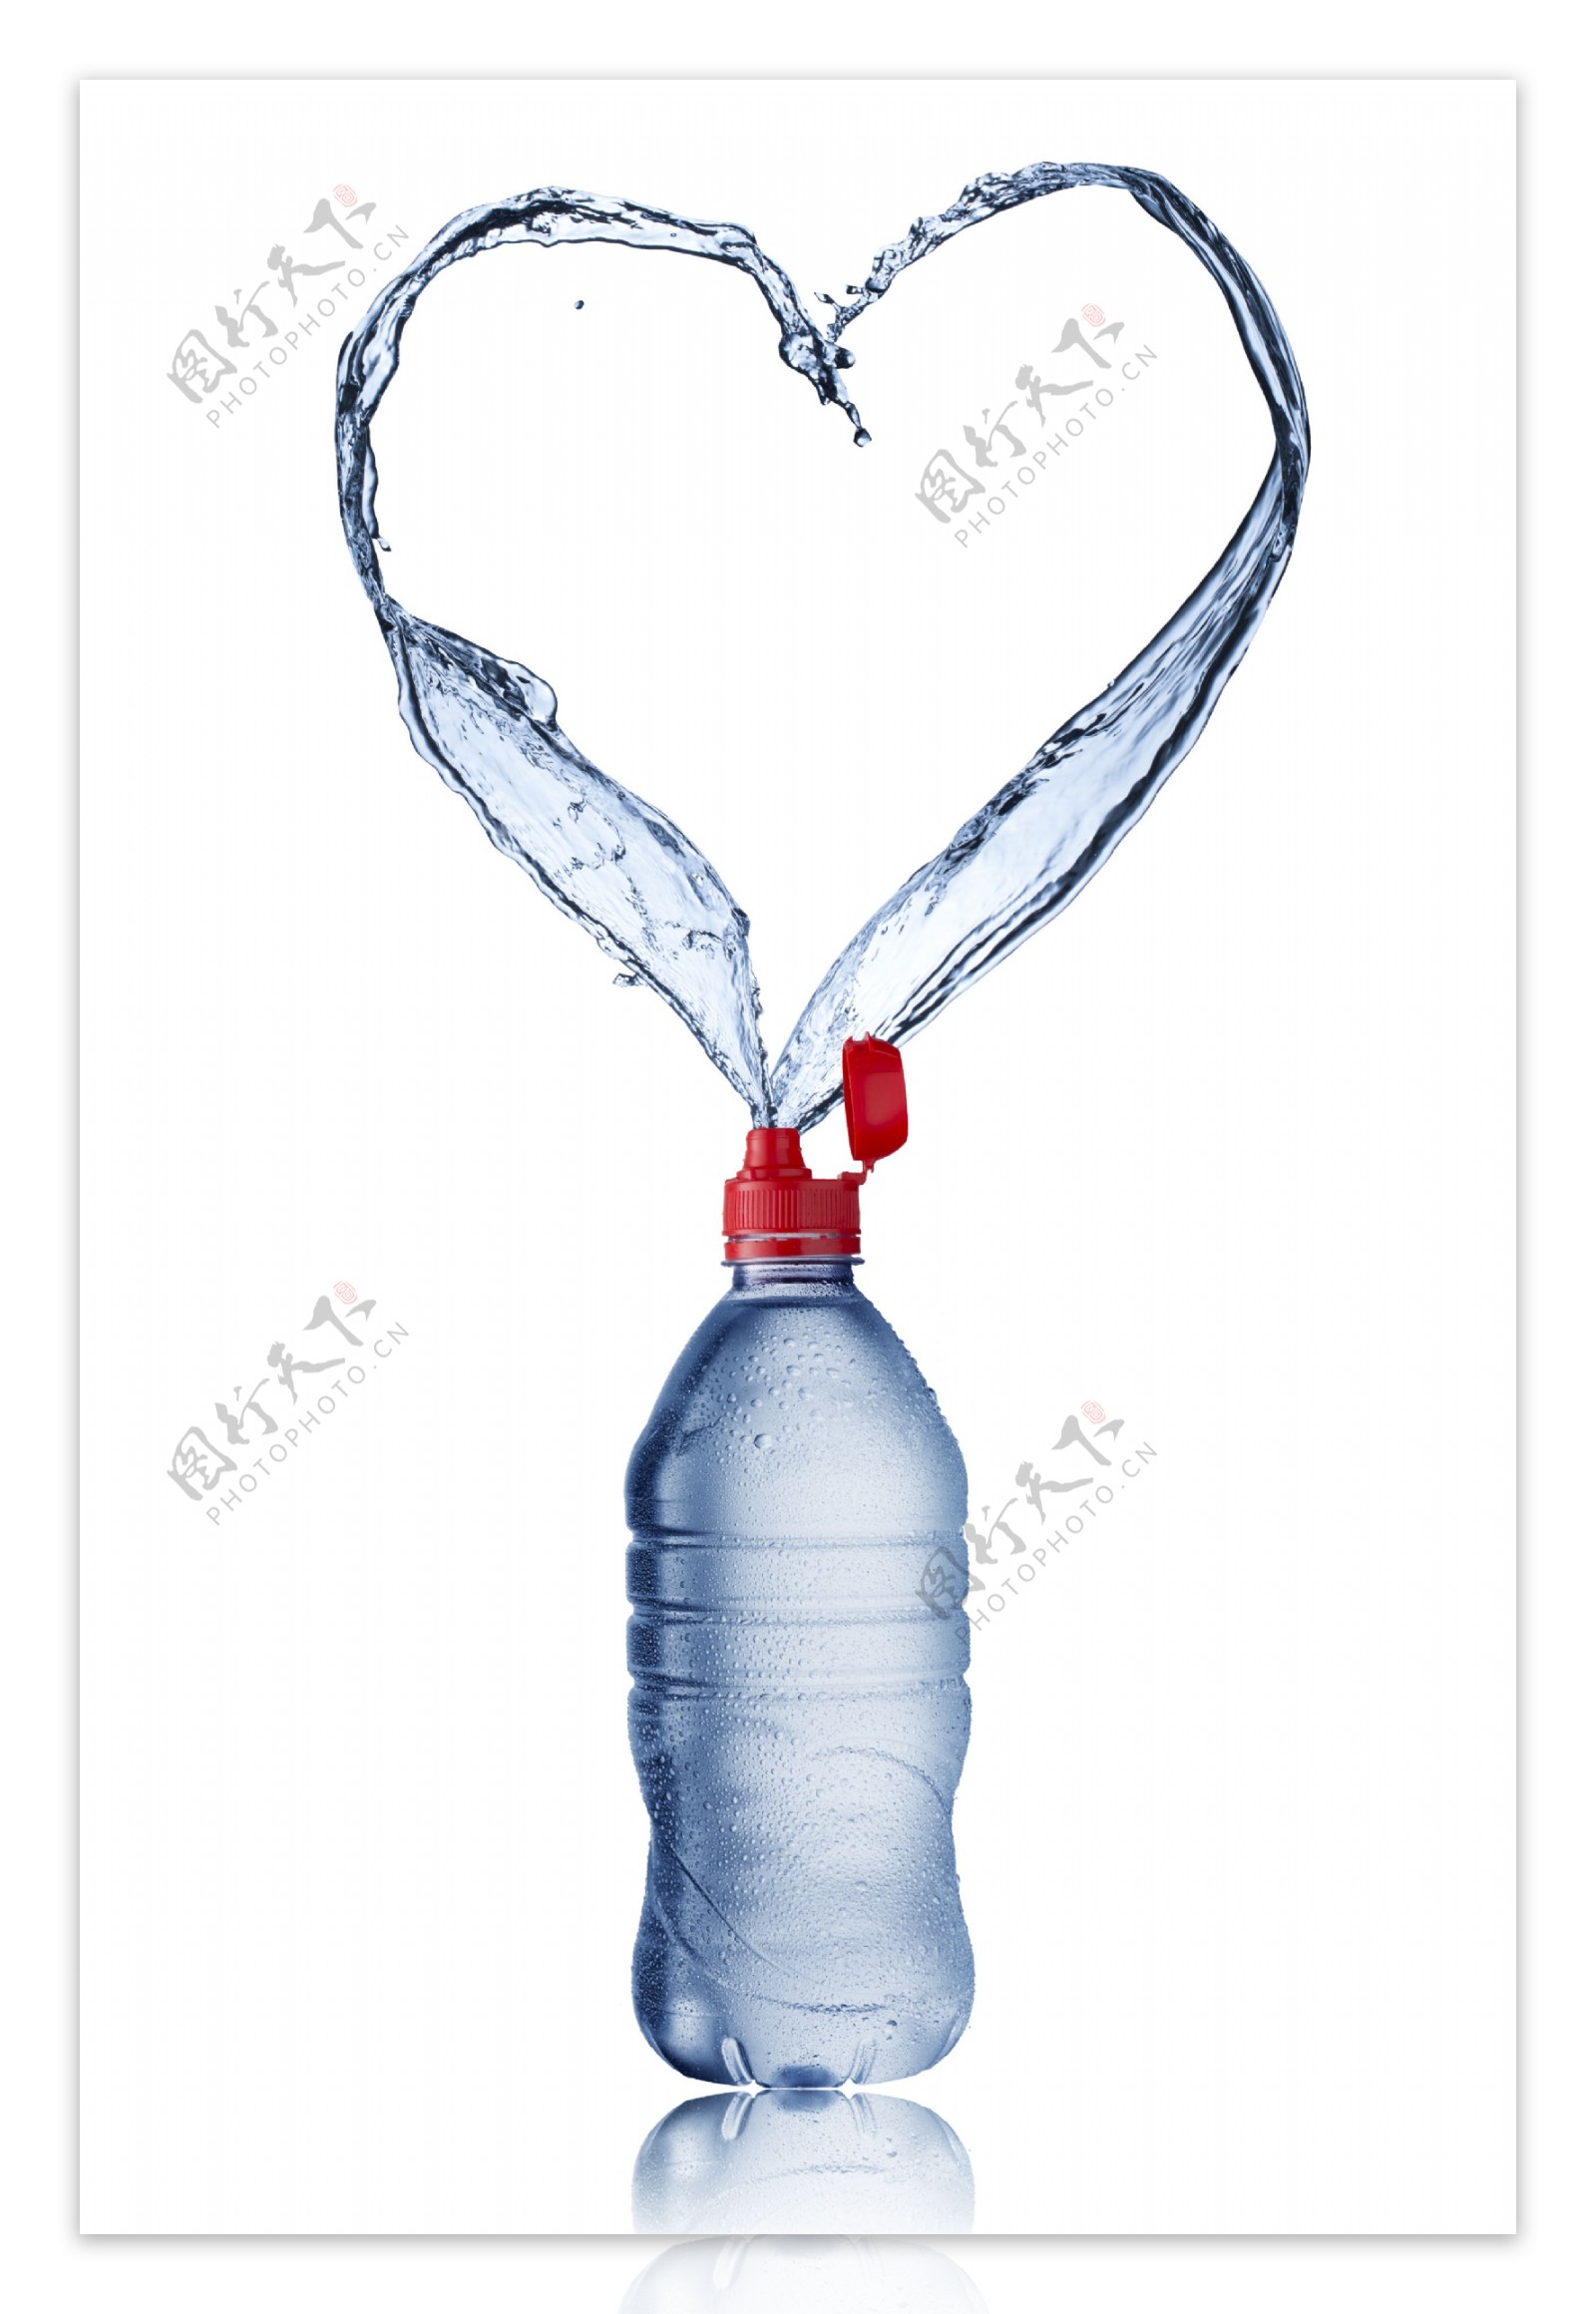 矿泉水瓶喷溅出的心形水花图片